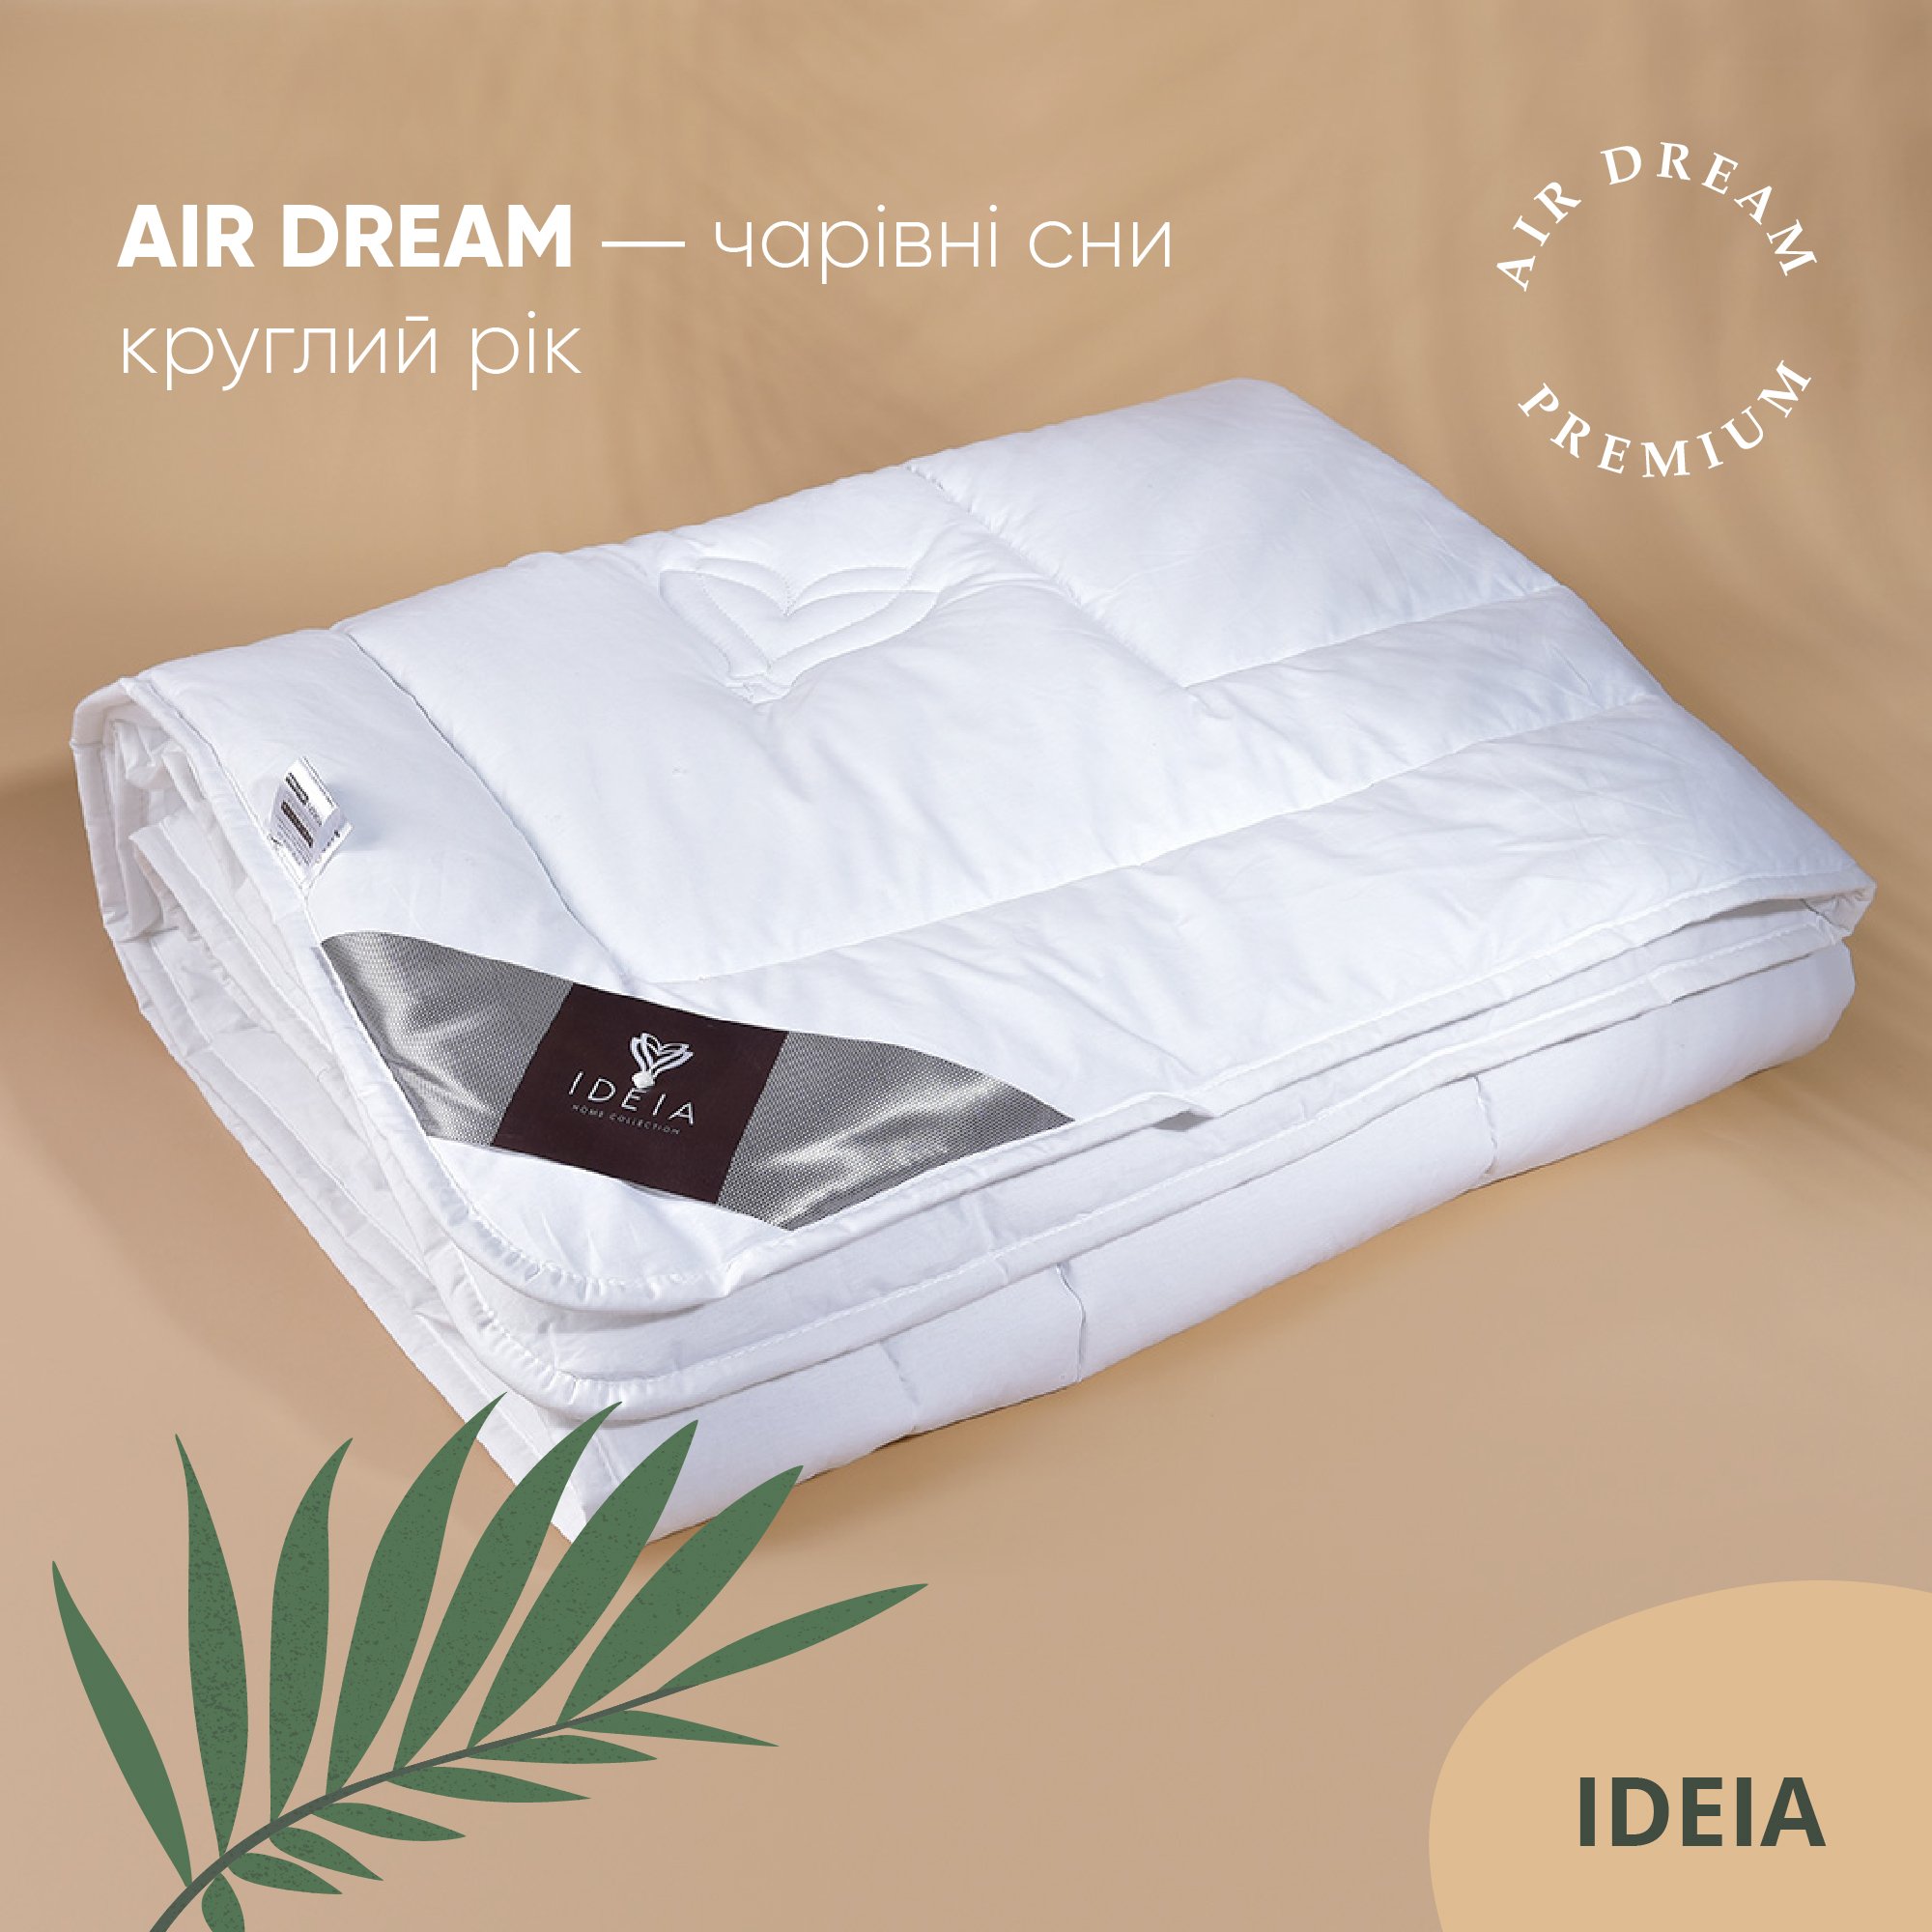 Одеяло Ideia Air Dream Premium летнее, 210х175, белый (8-11697) - фото 4